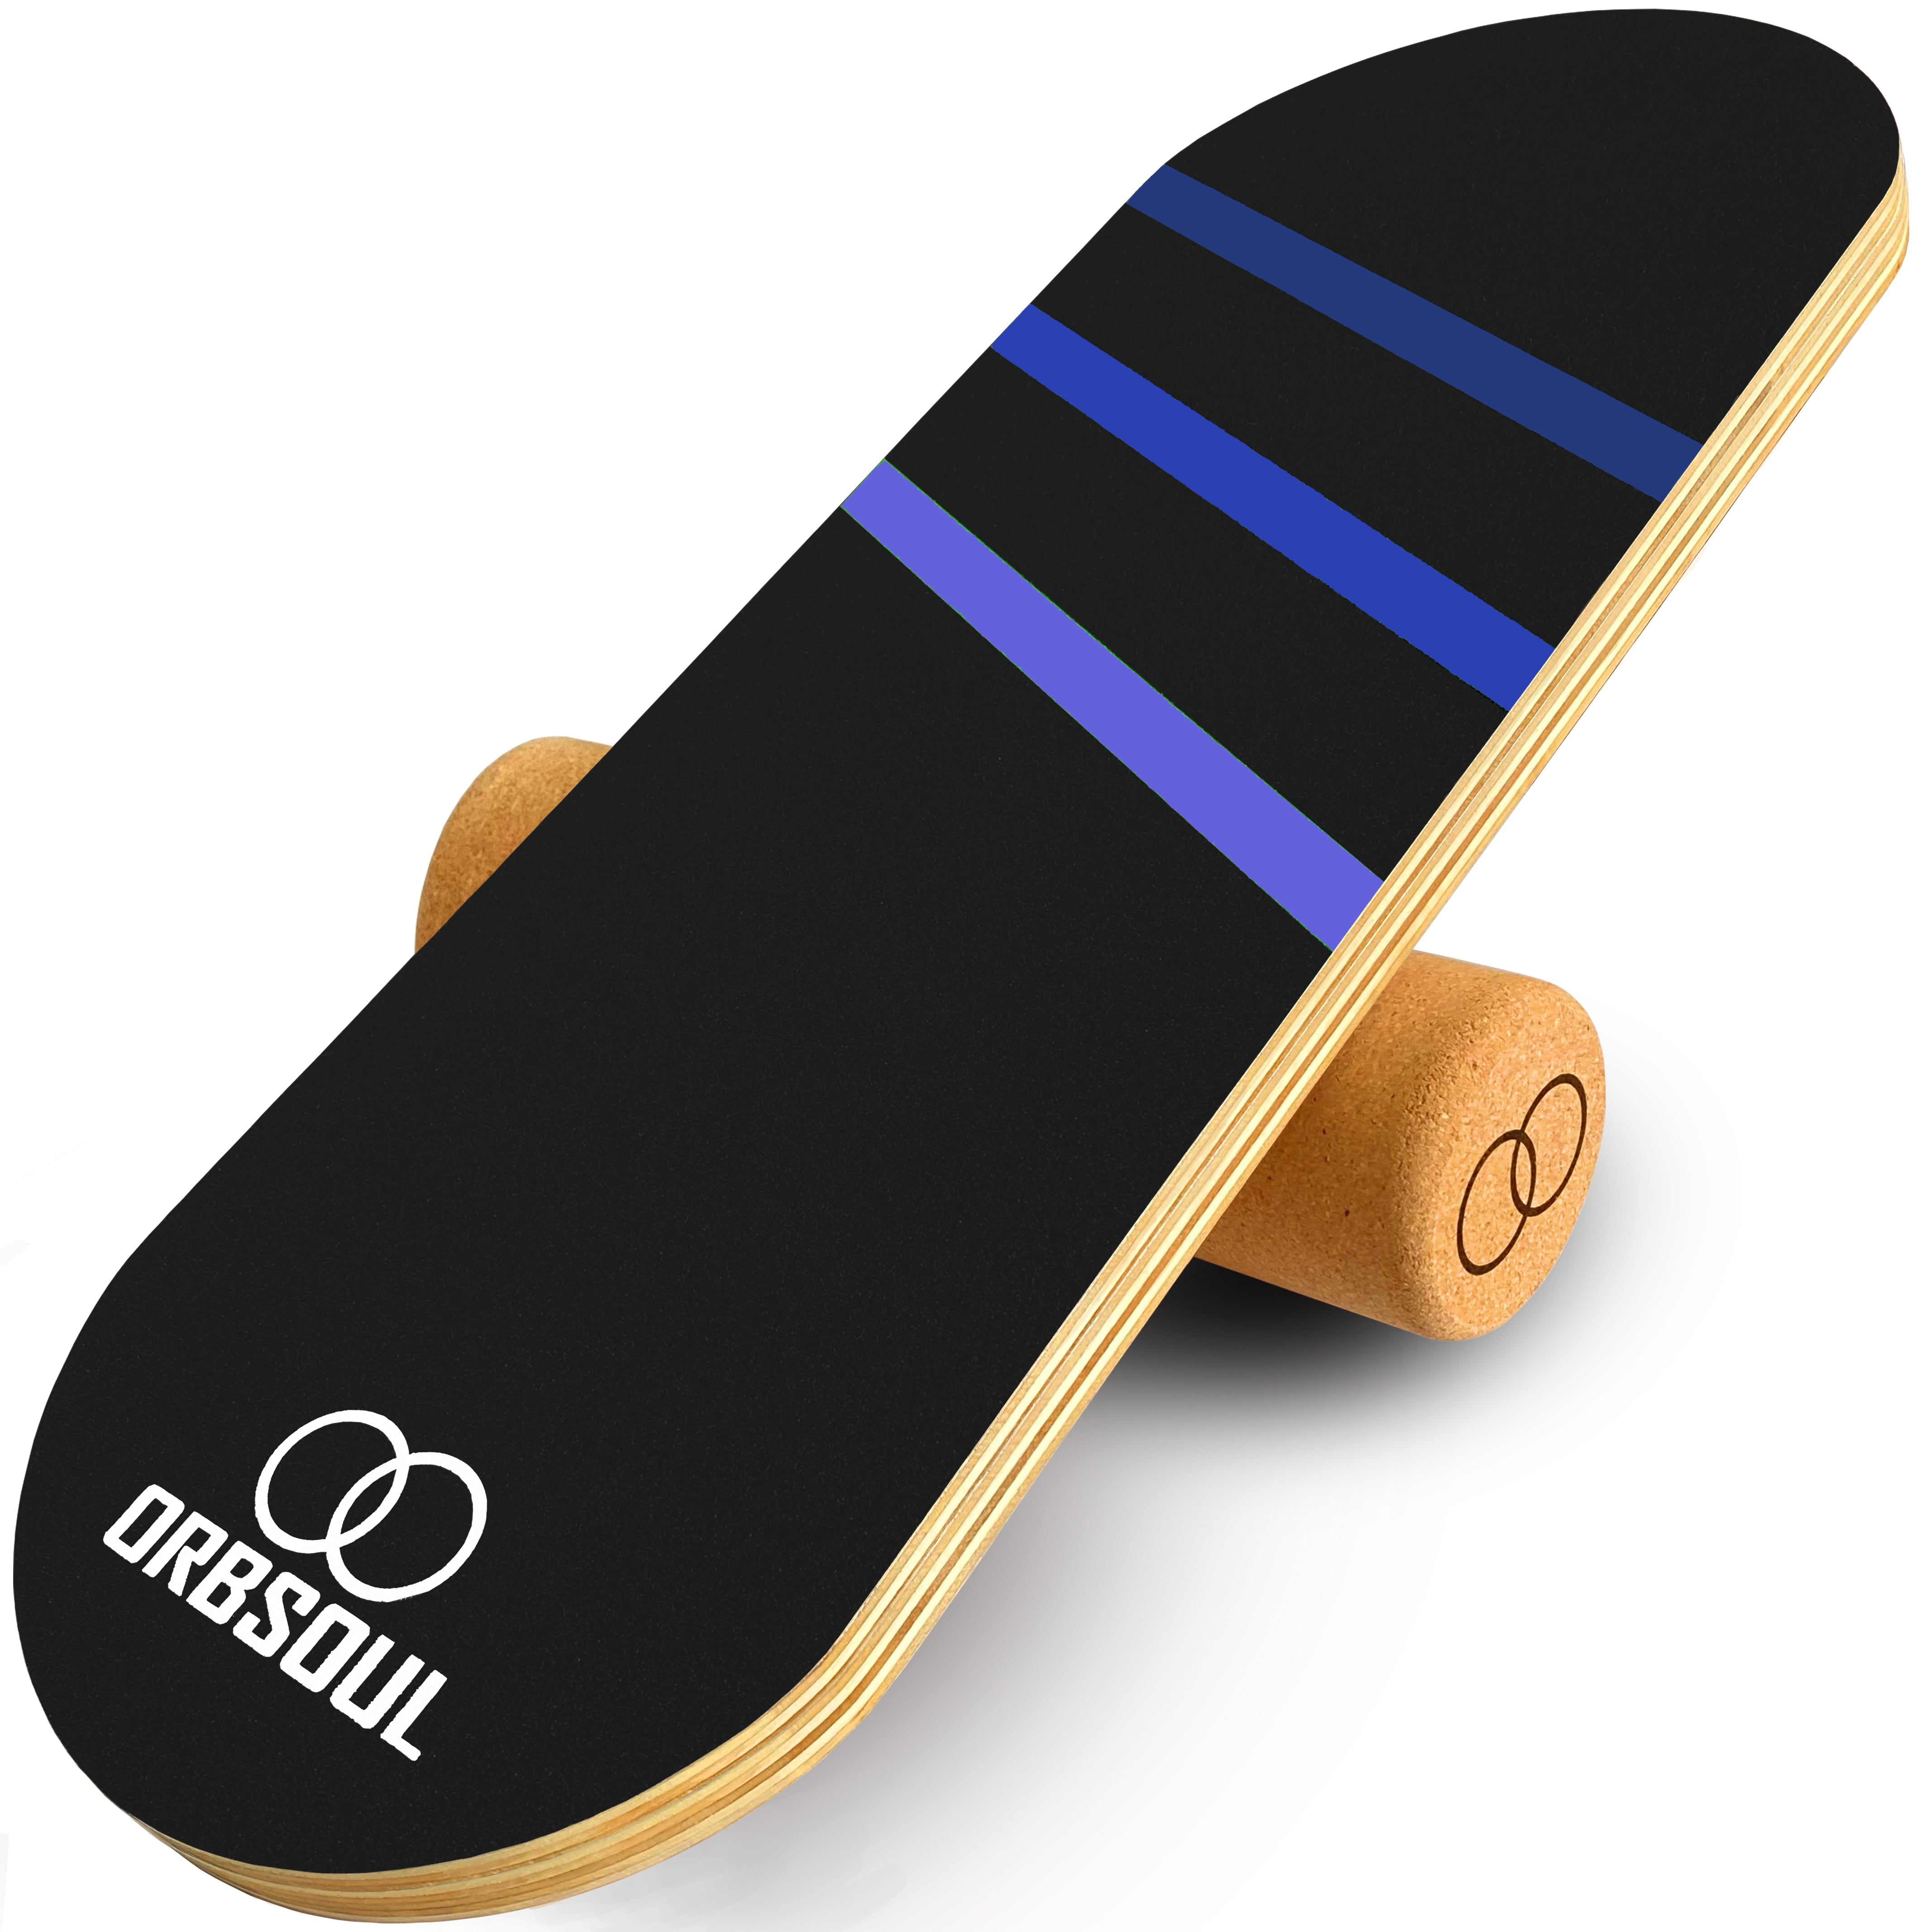 Orbsoul Core Sport Balance Board. Ocean Blue